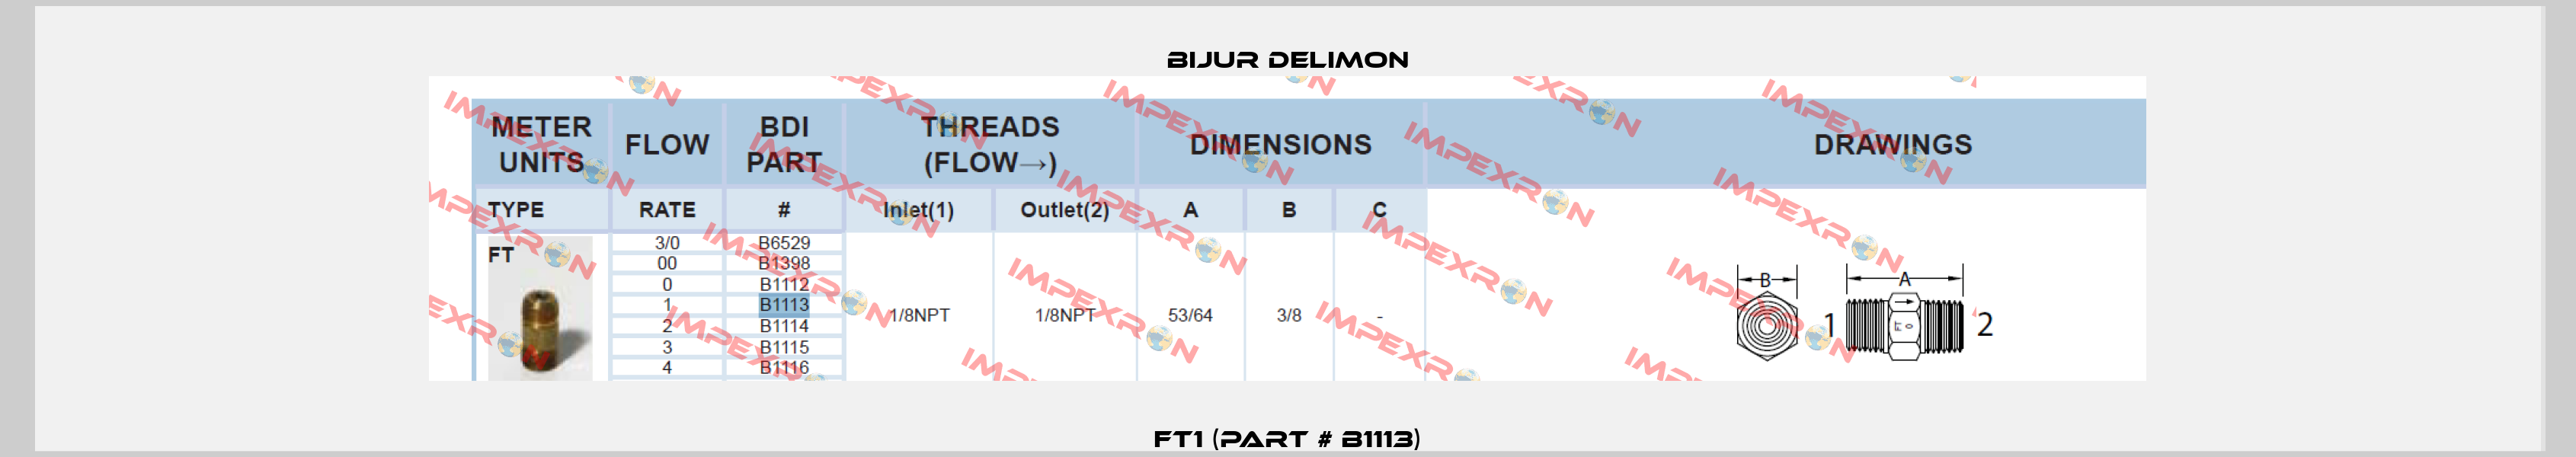 FT1 (Part # B1113) Bijur Delimon